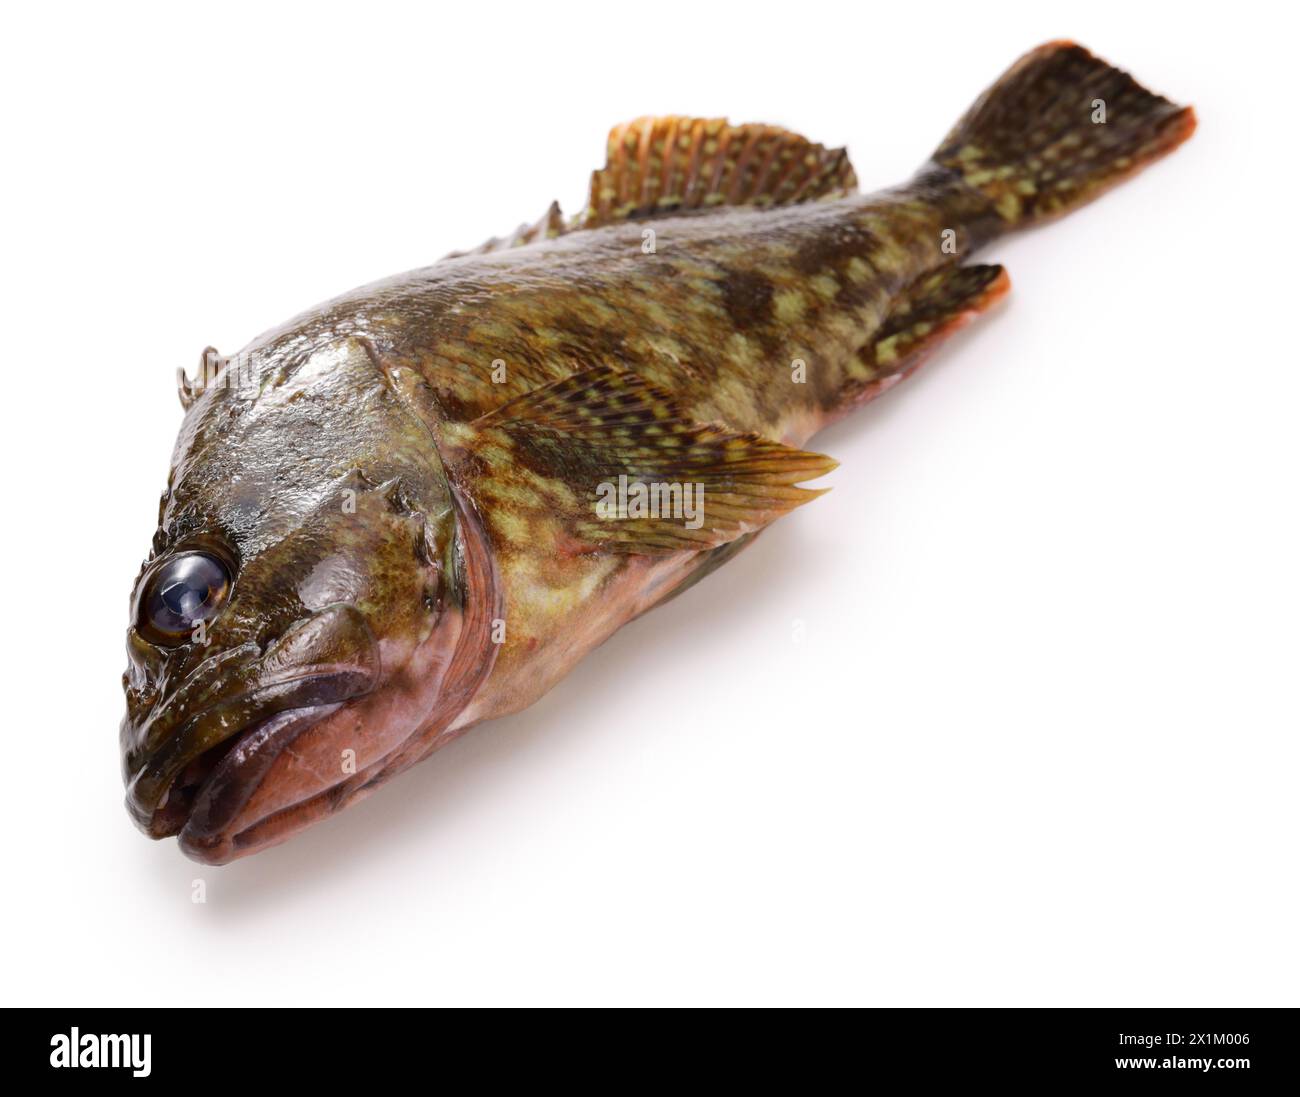 Japanese marbled rockfish (Kasago) isolated on white background Stock Photo